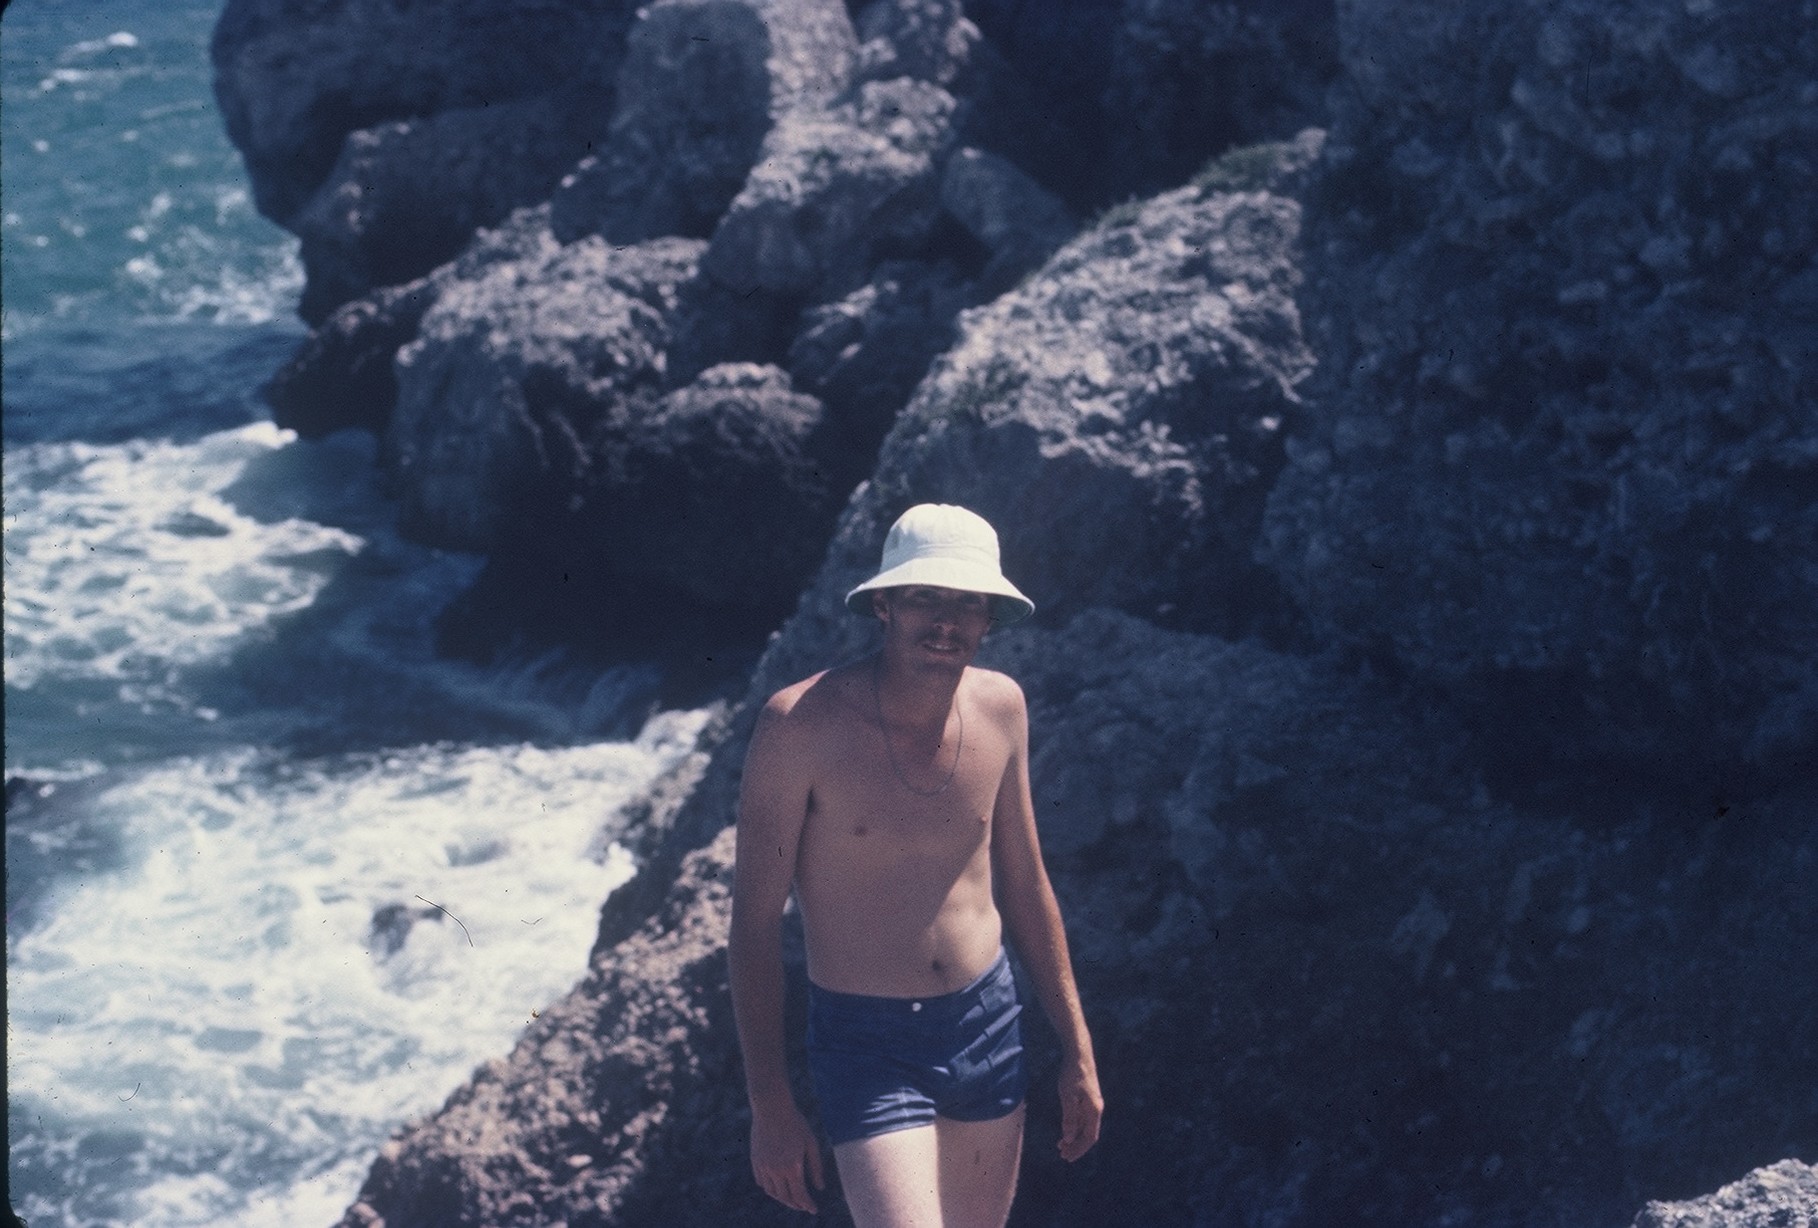 1974 - Gus at Cuba Swim Hole